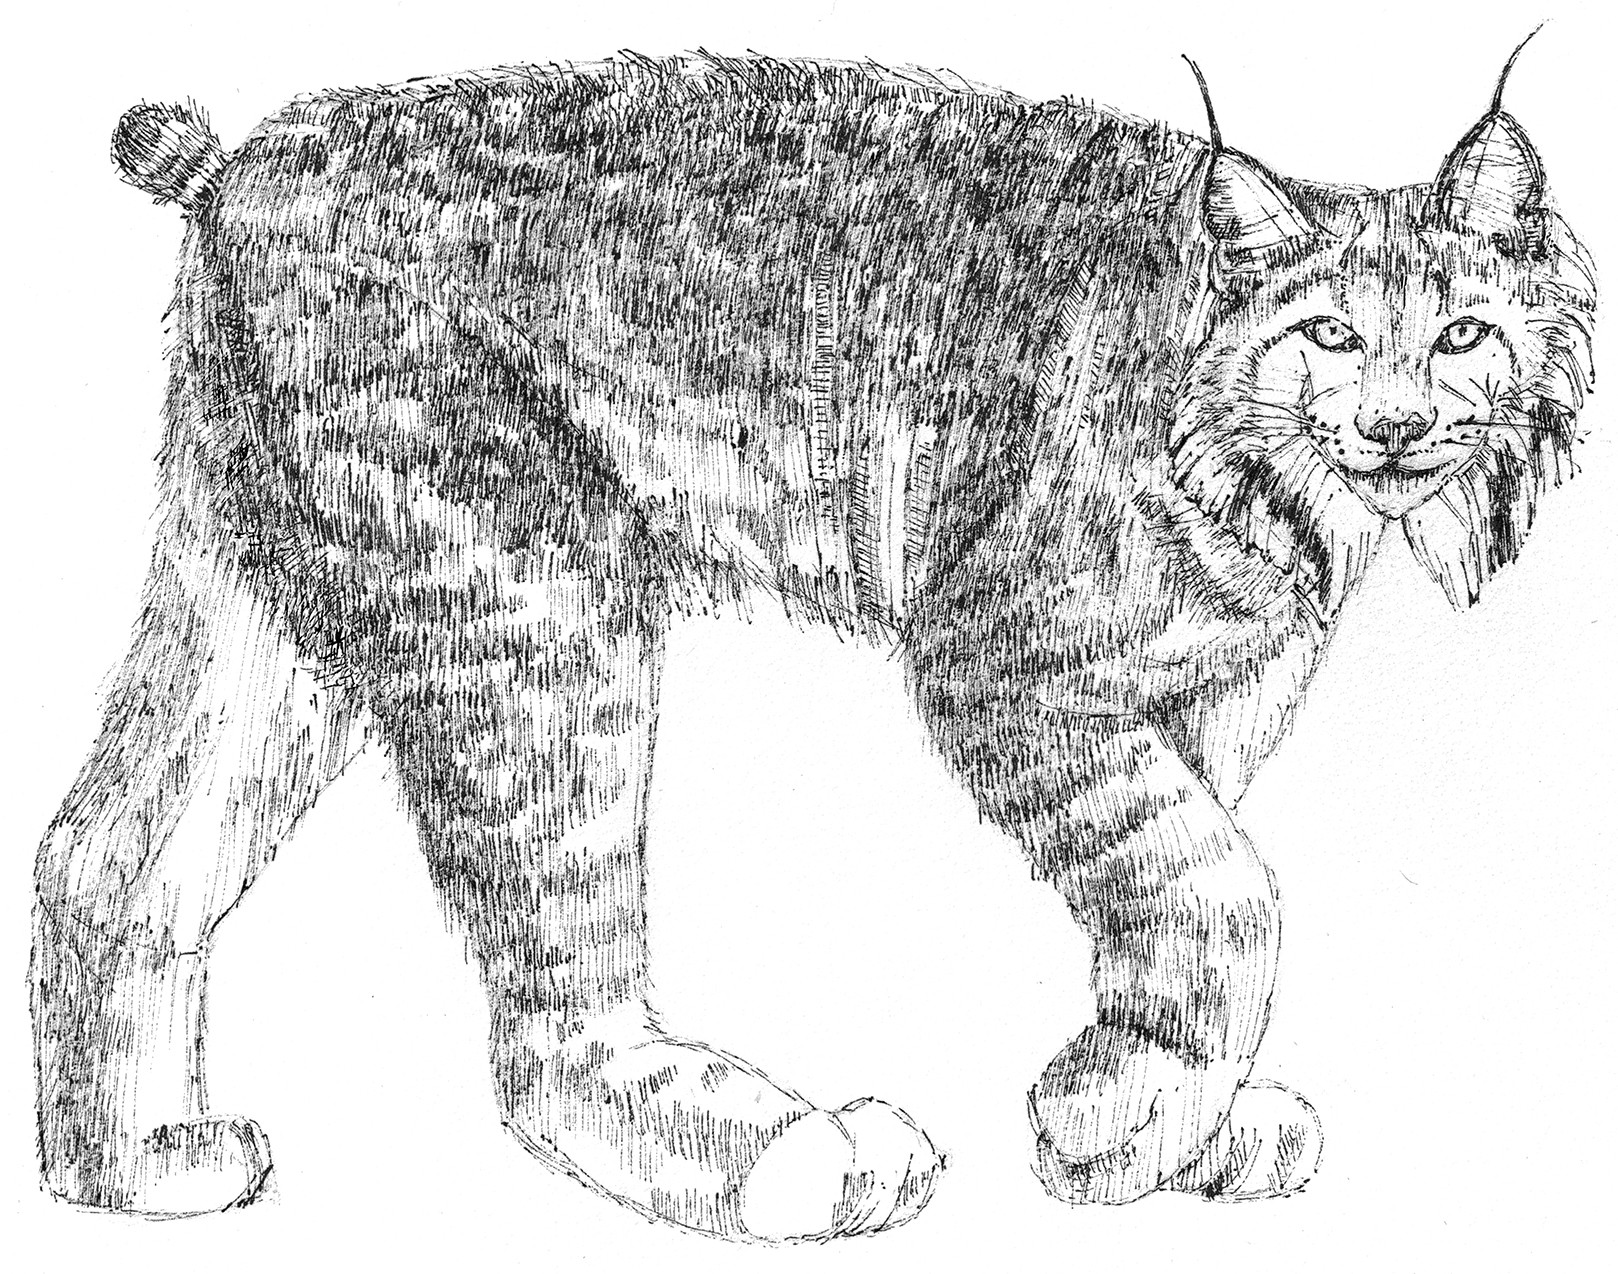 Lynx (c) Susan Morgan